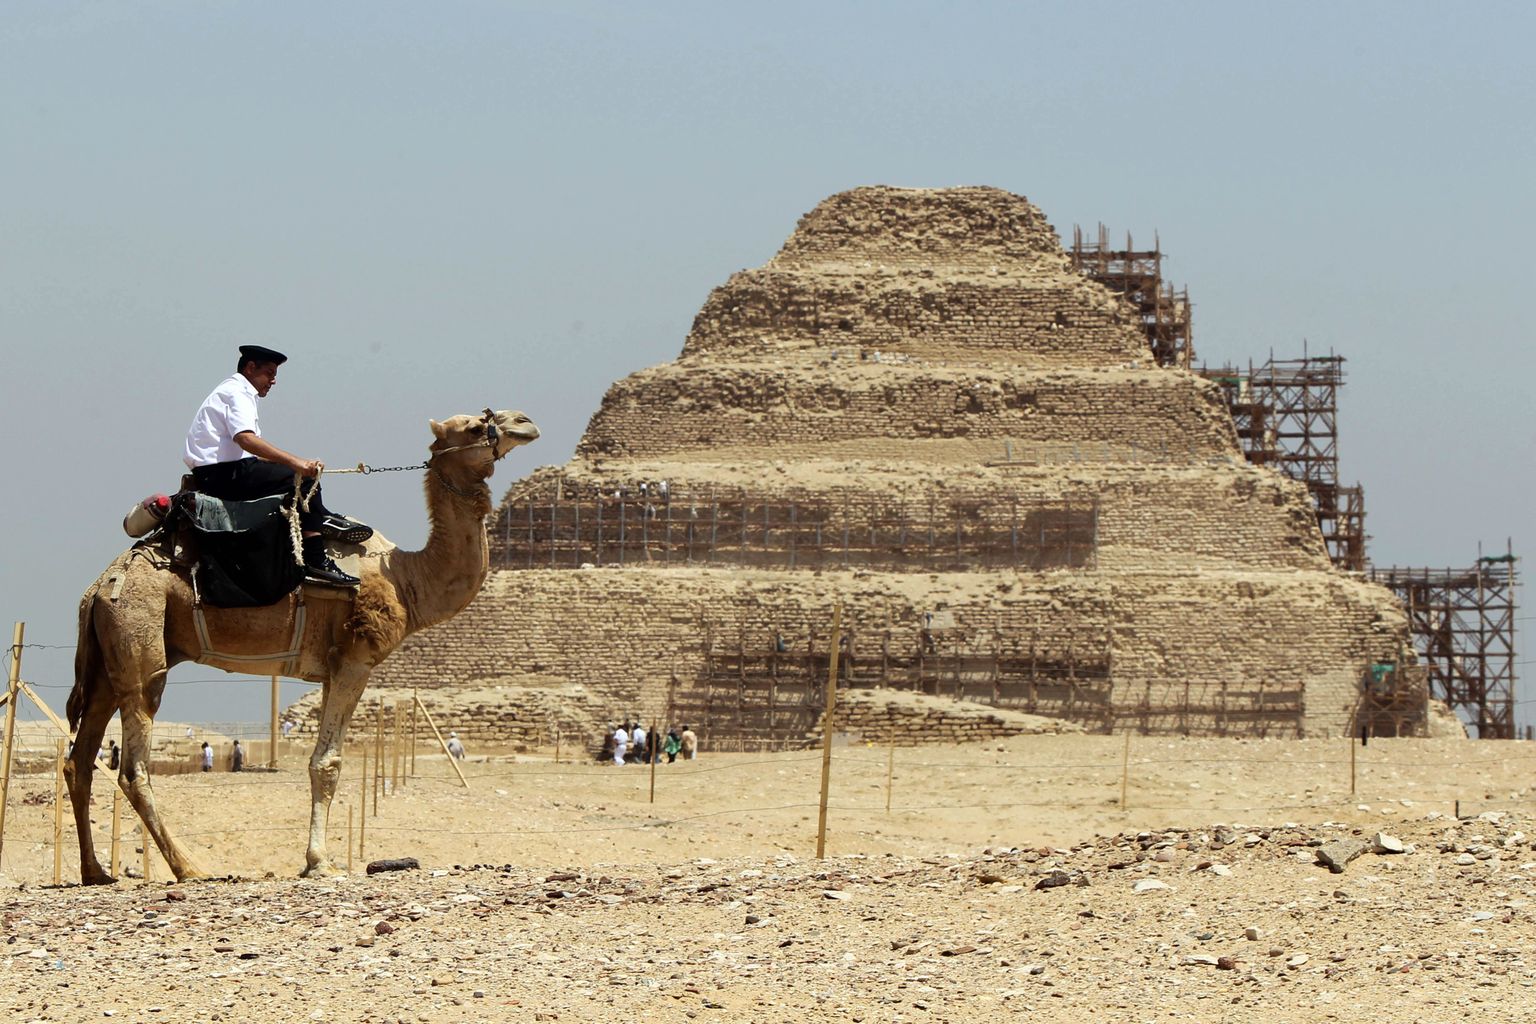 Saqqara üks kuulsamaid vaatamisväärsusi on astmikpüramiid